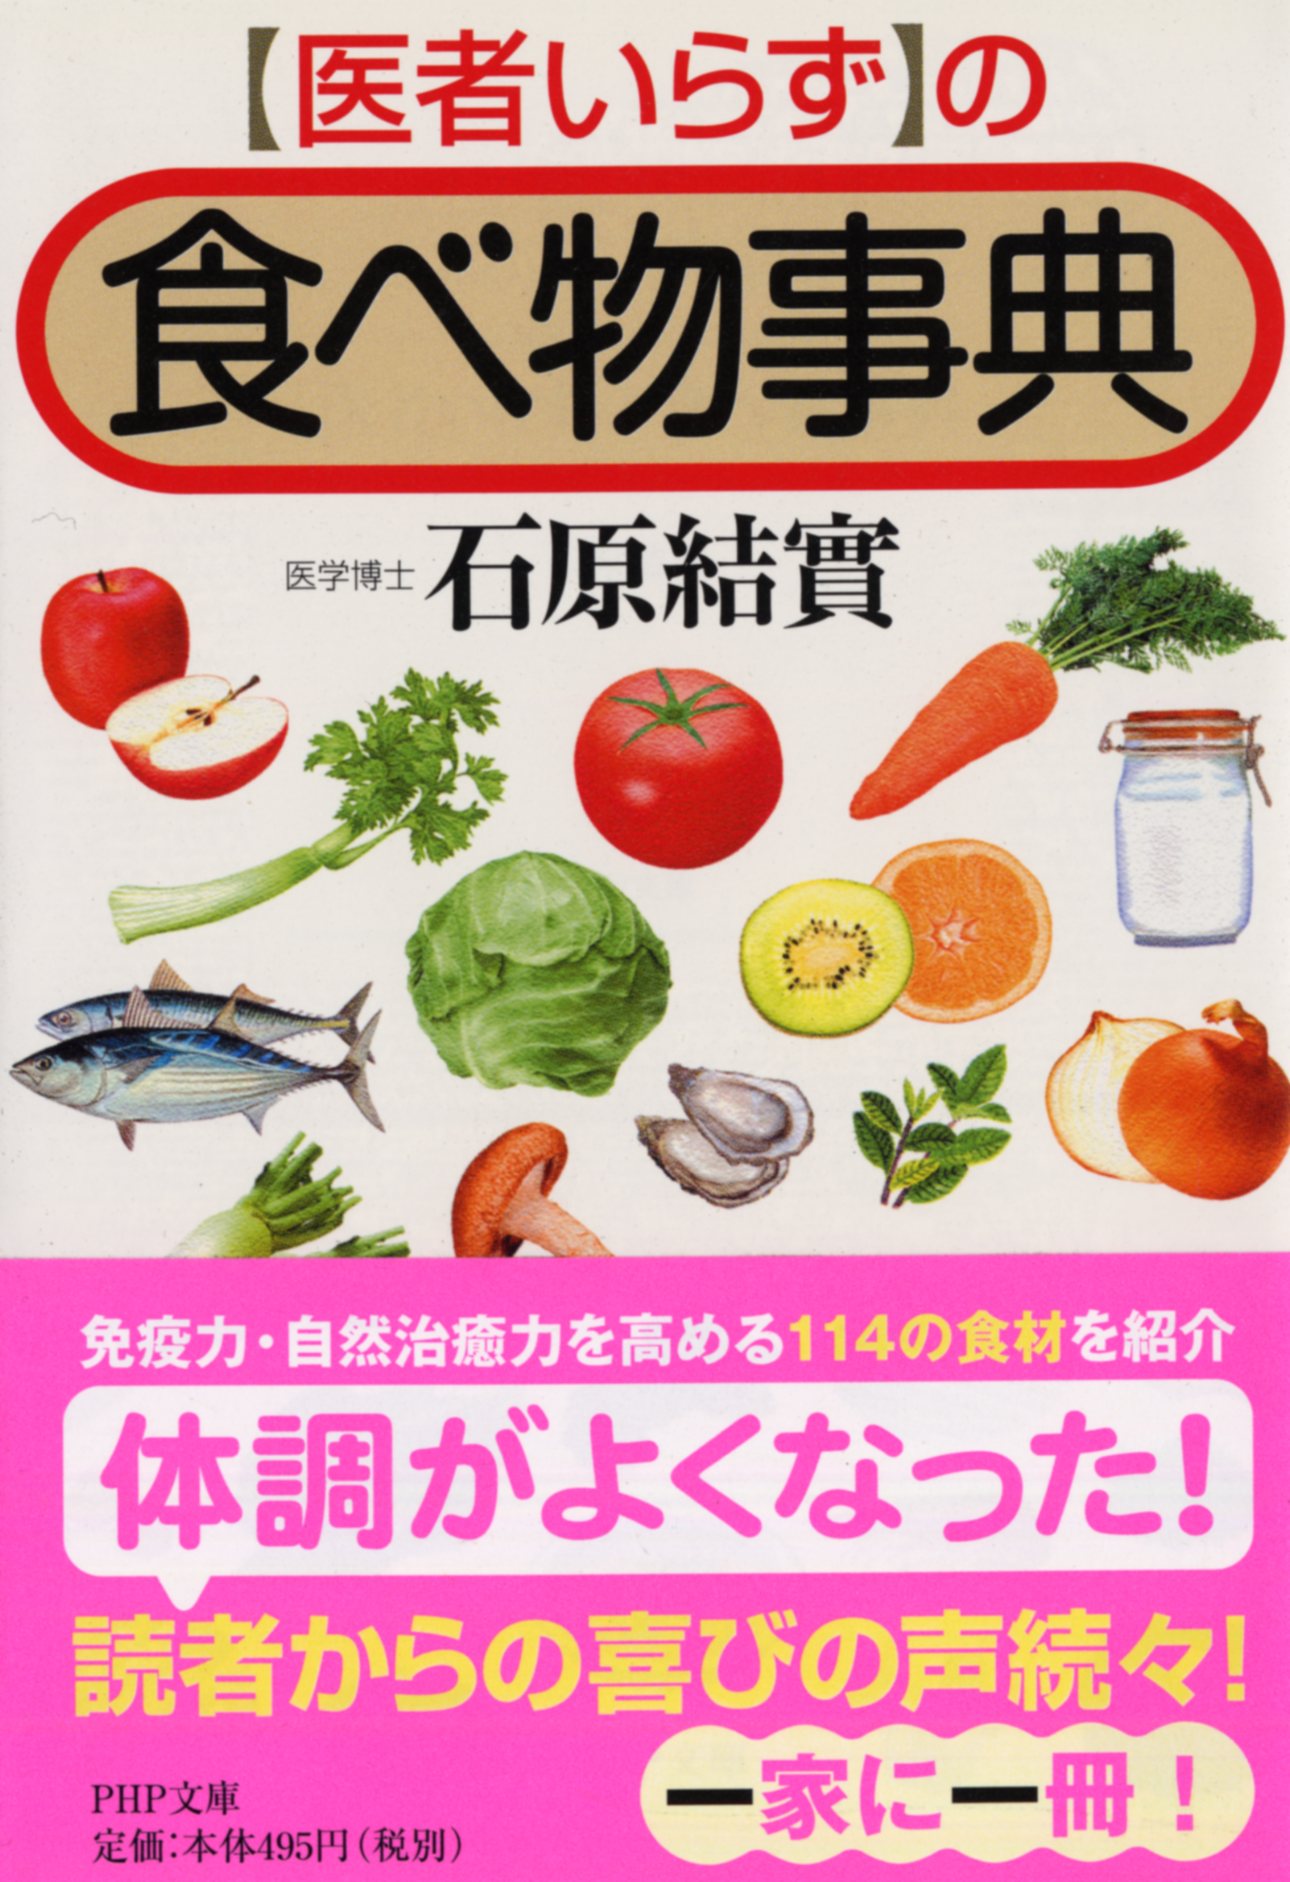 「医者いらず」の食べ物事典の商品画像